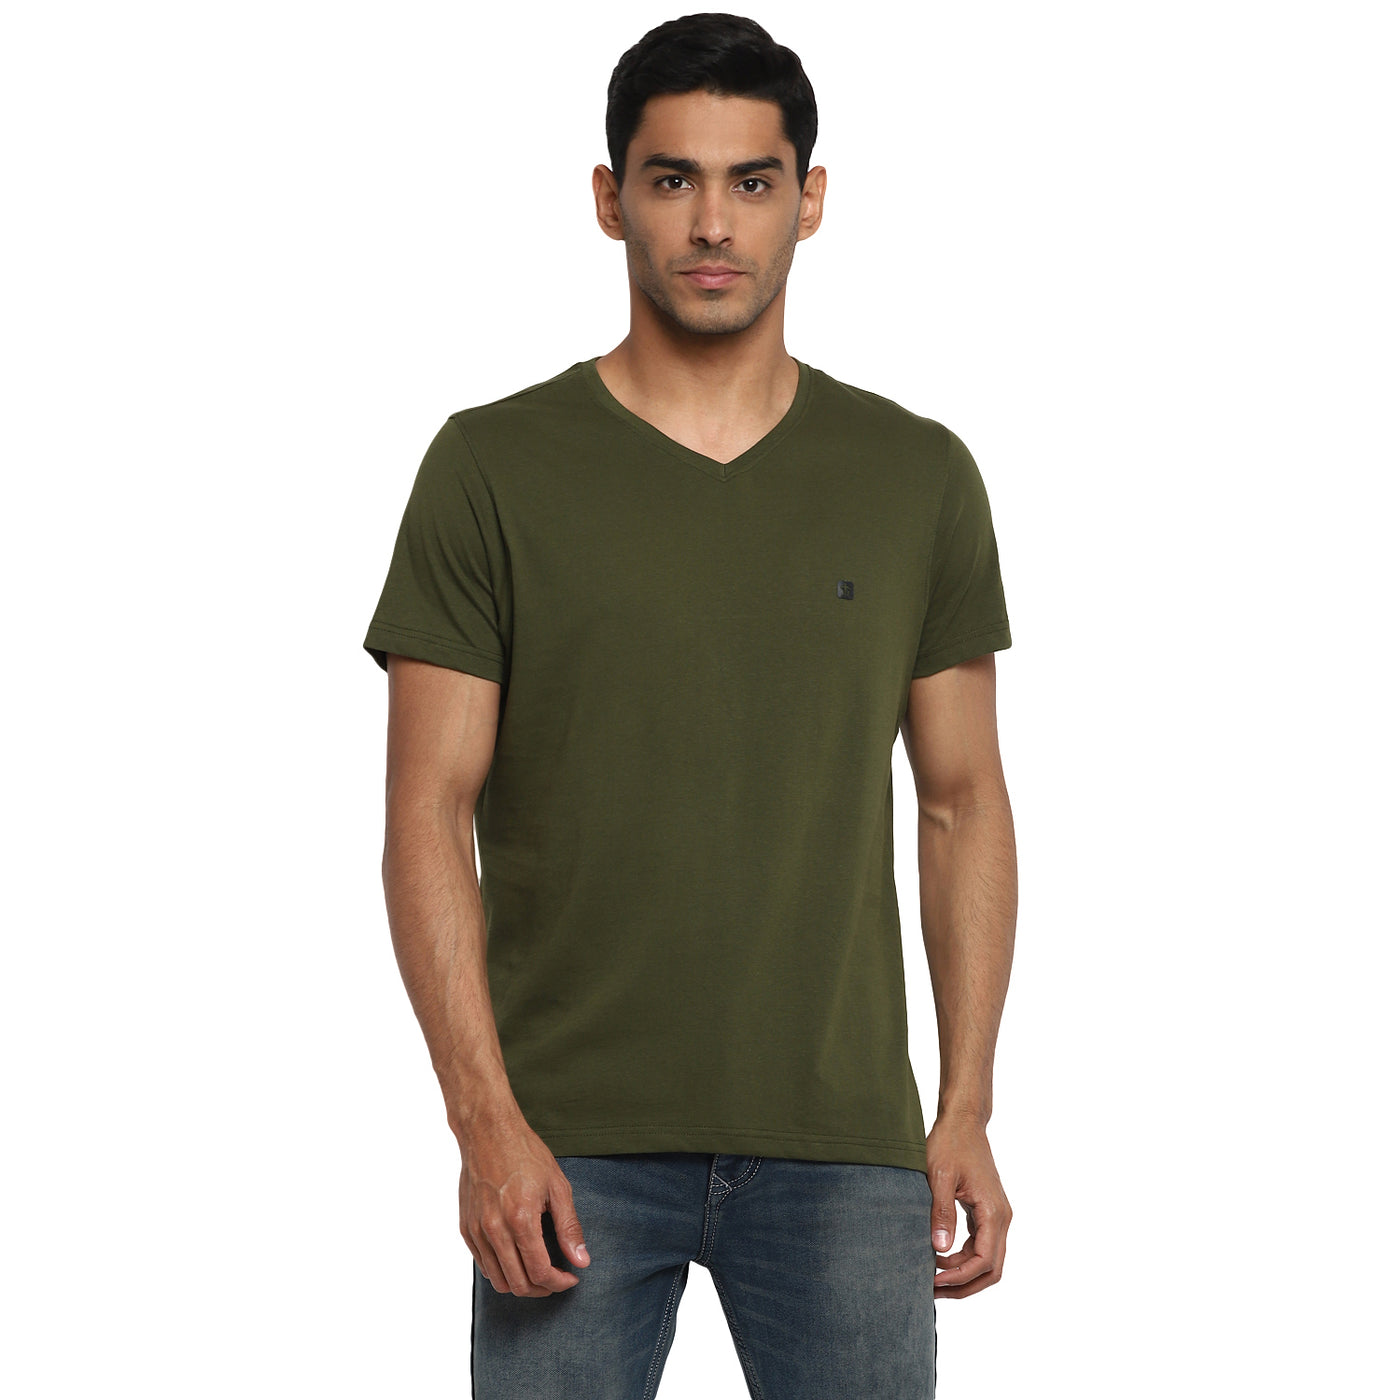 Essentials Olive Solid V Neck T-Shirt